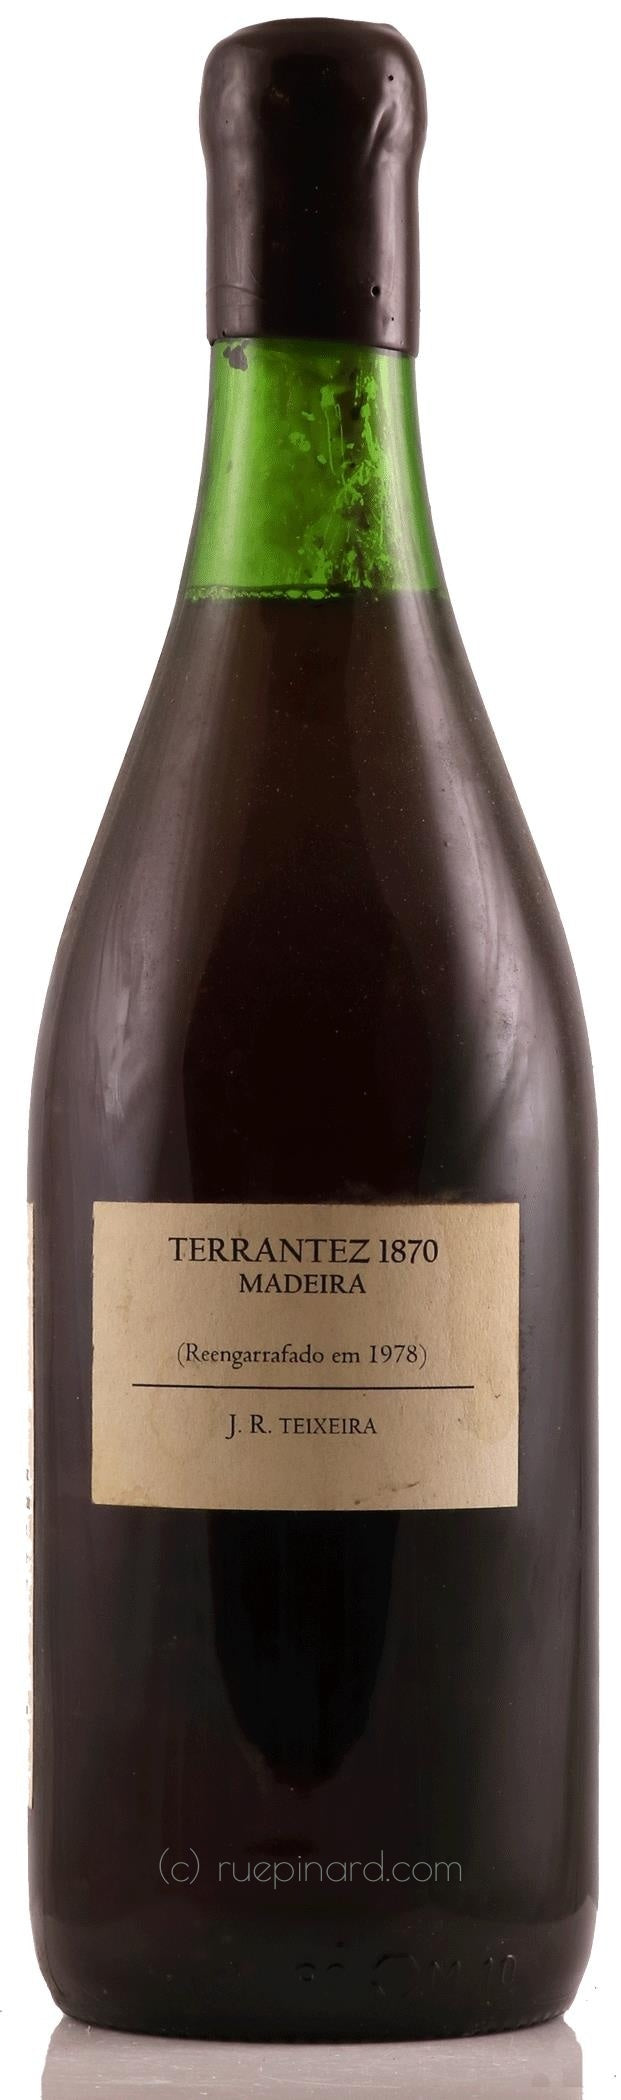 Teixeira Madeira Terrantez 1870, recorked OP '78 - Rue Pinard